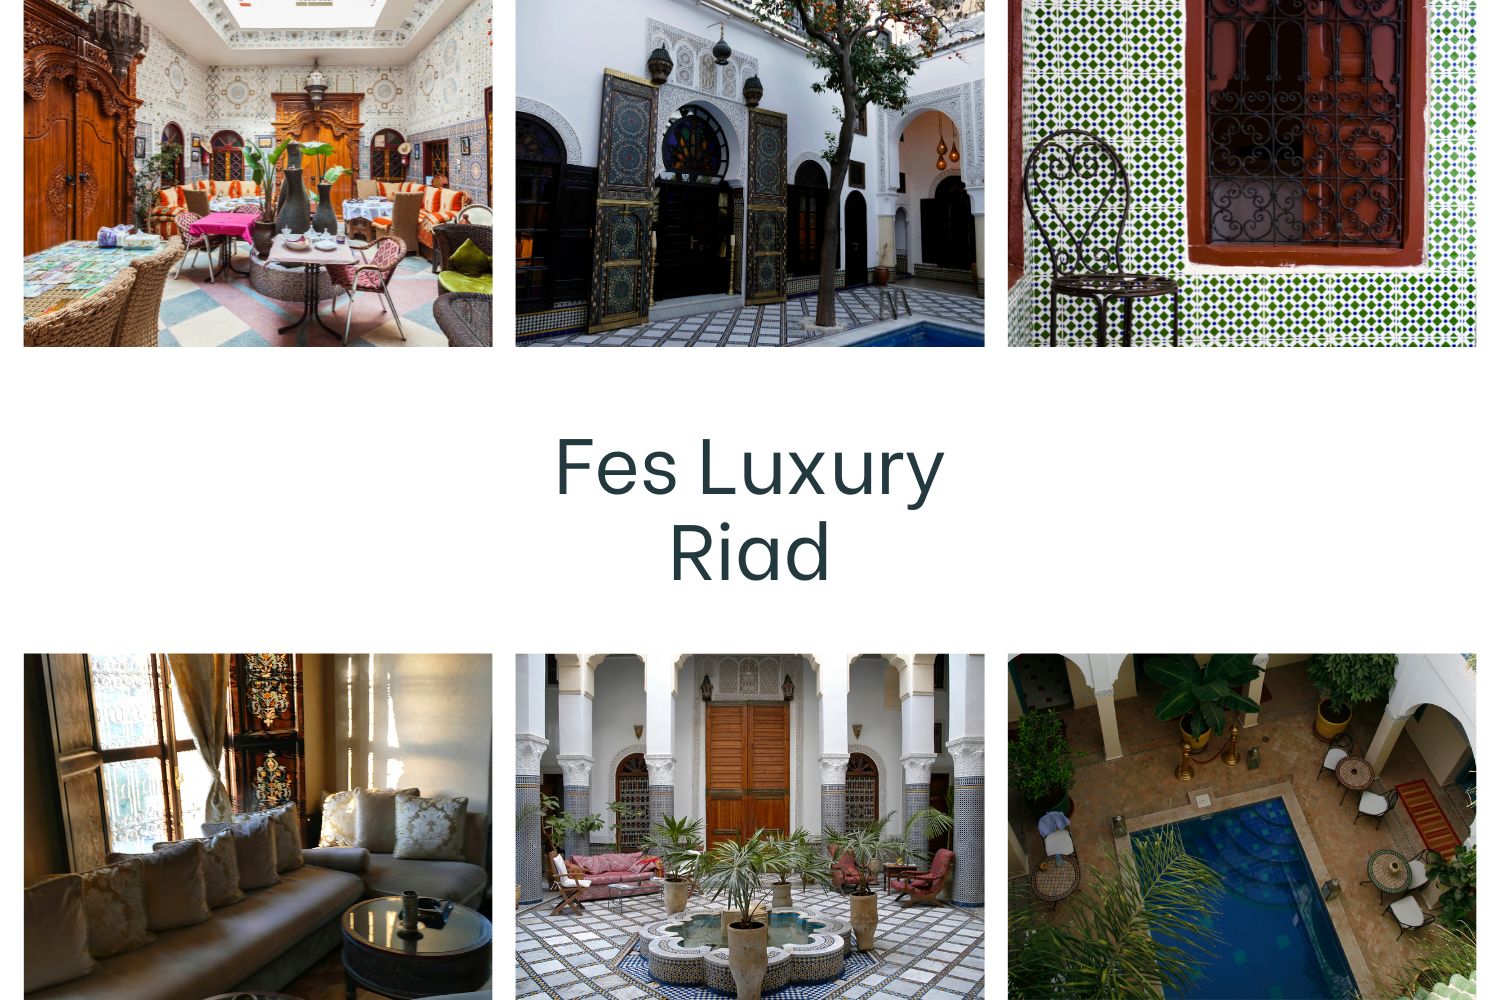 Fes Luxury Riad